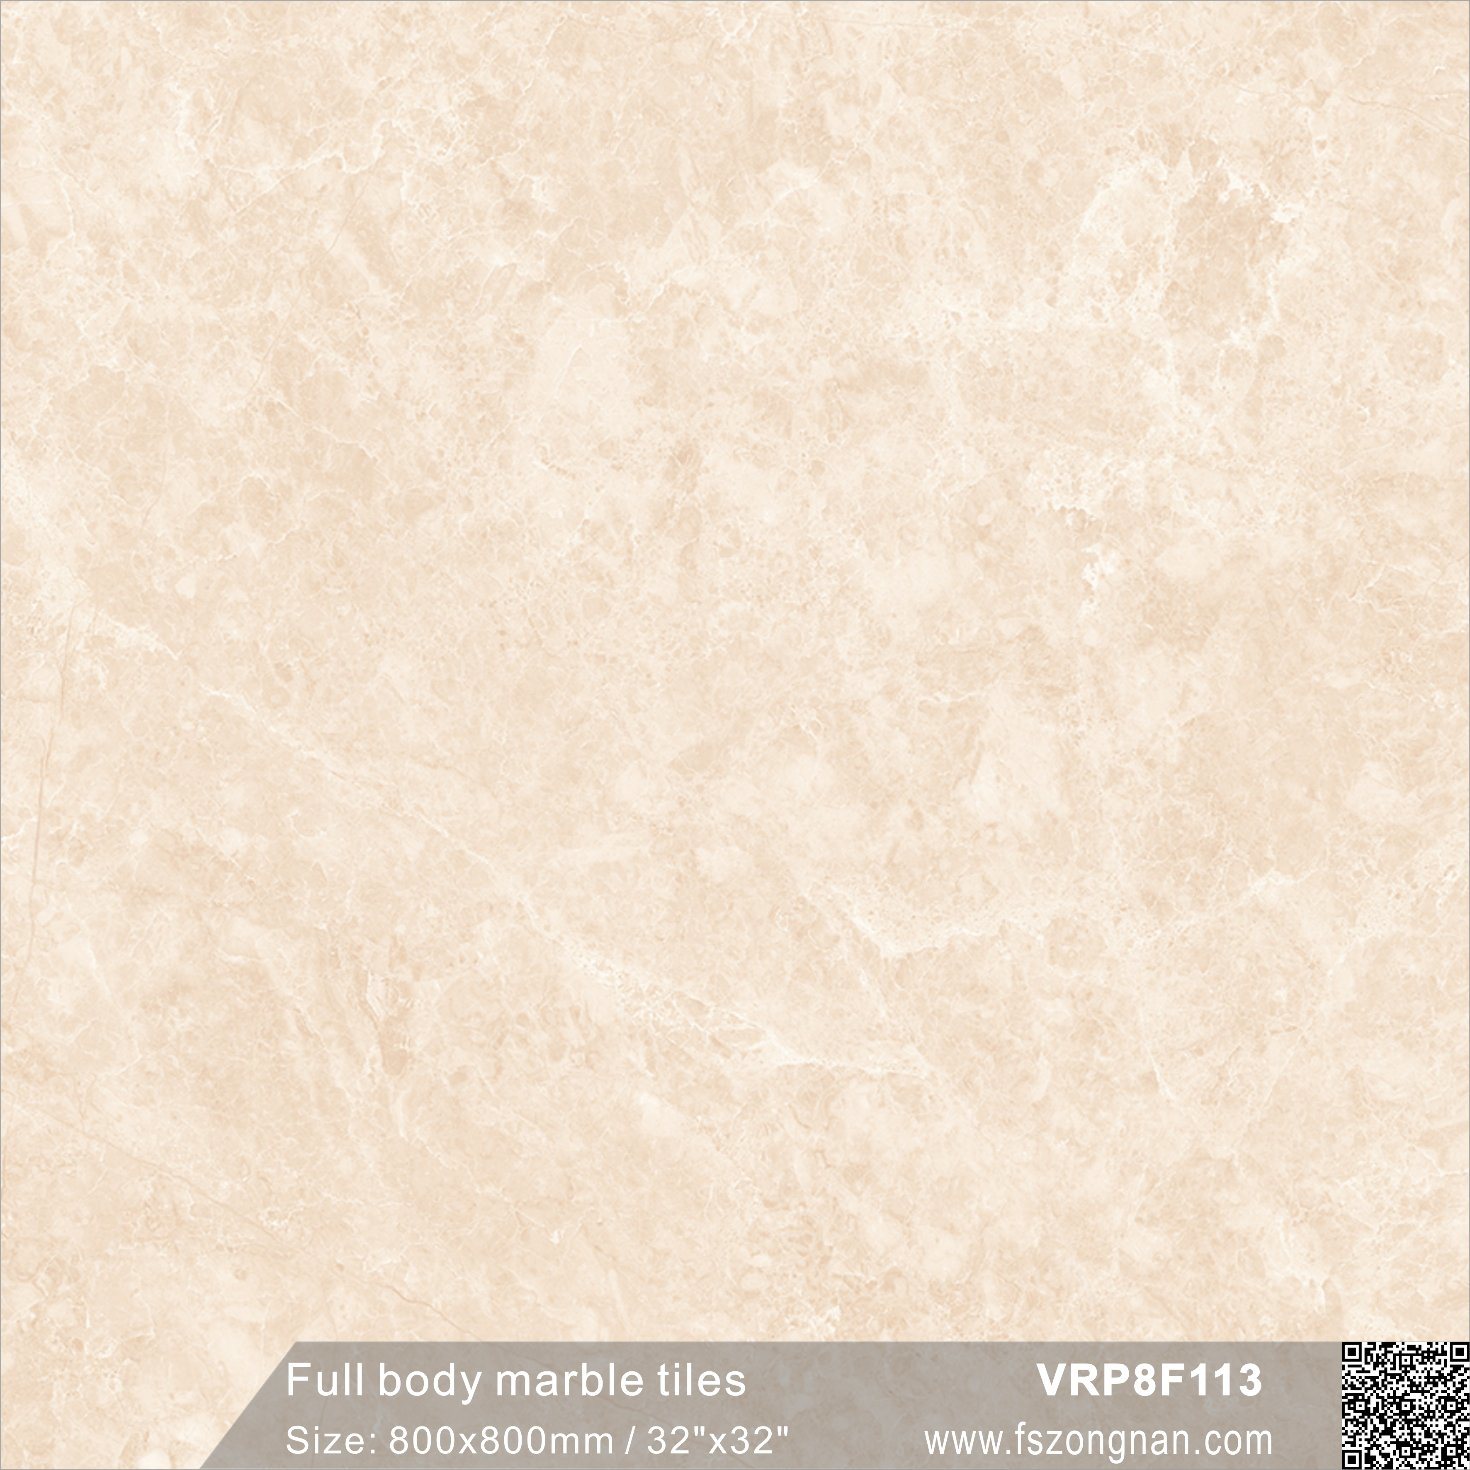 China Foshan Full Body Marble Glazed Floor Tile (VRP8F113, 800X800mm/32''x32'')